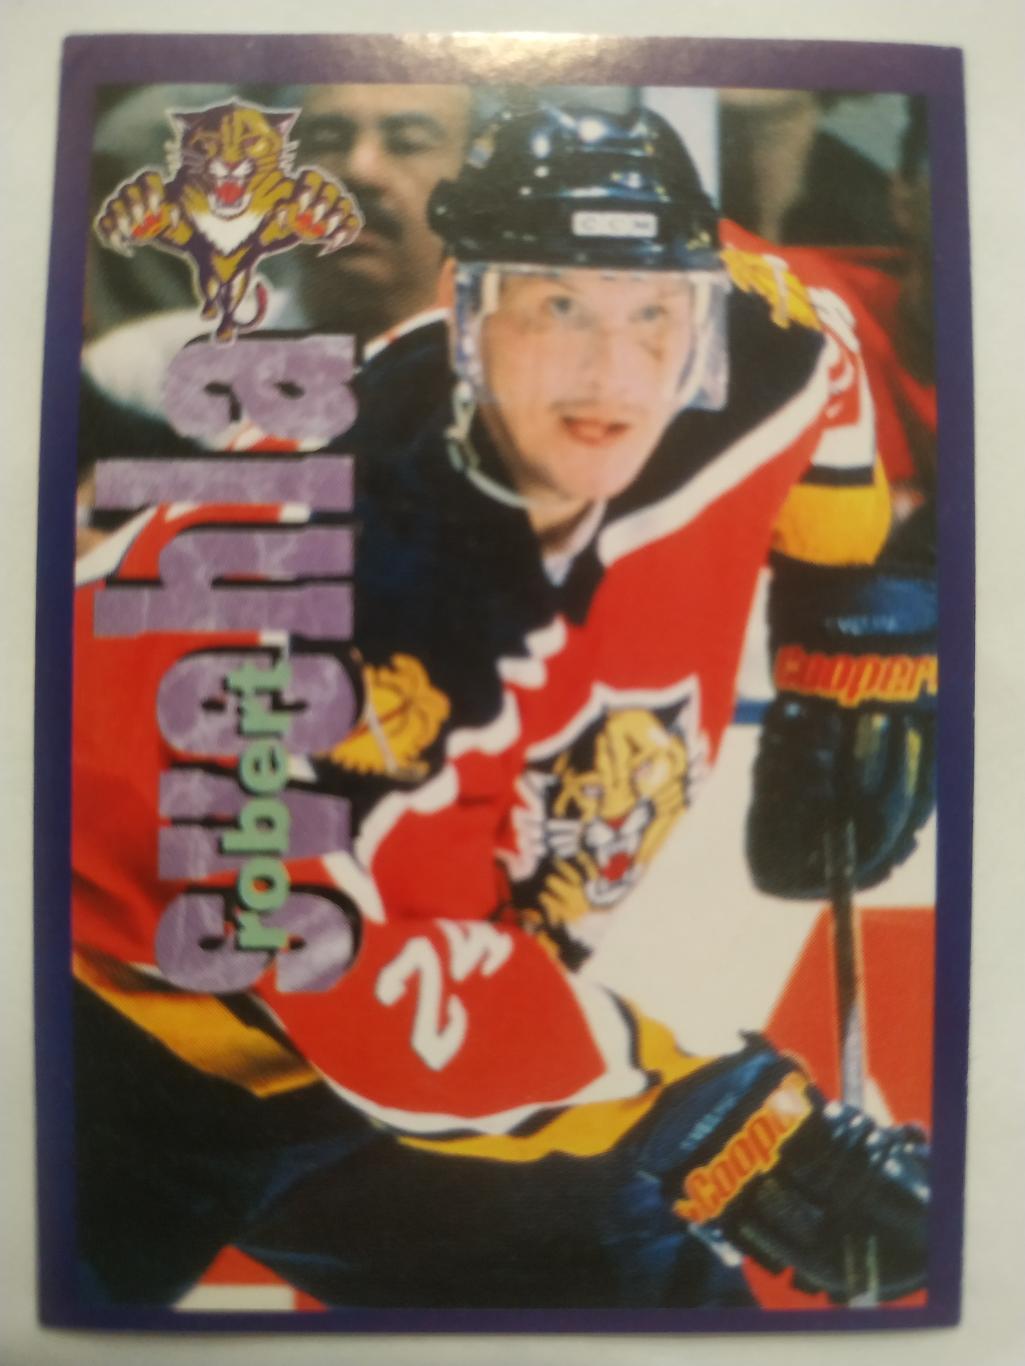 ХОККЕЙ НАКЛЕЙКА НХЛ ПАНИНИ 1998-1999 КОЛЛЕКЦИЯ NHL PANINI ROBERT SVEHLA #57